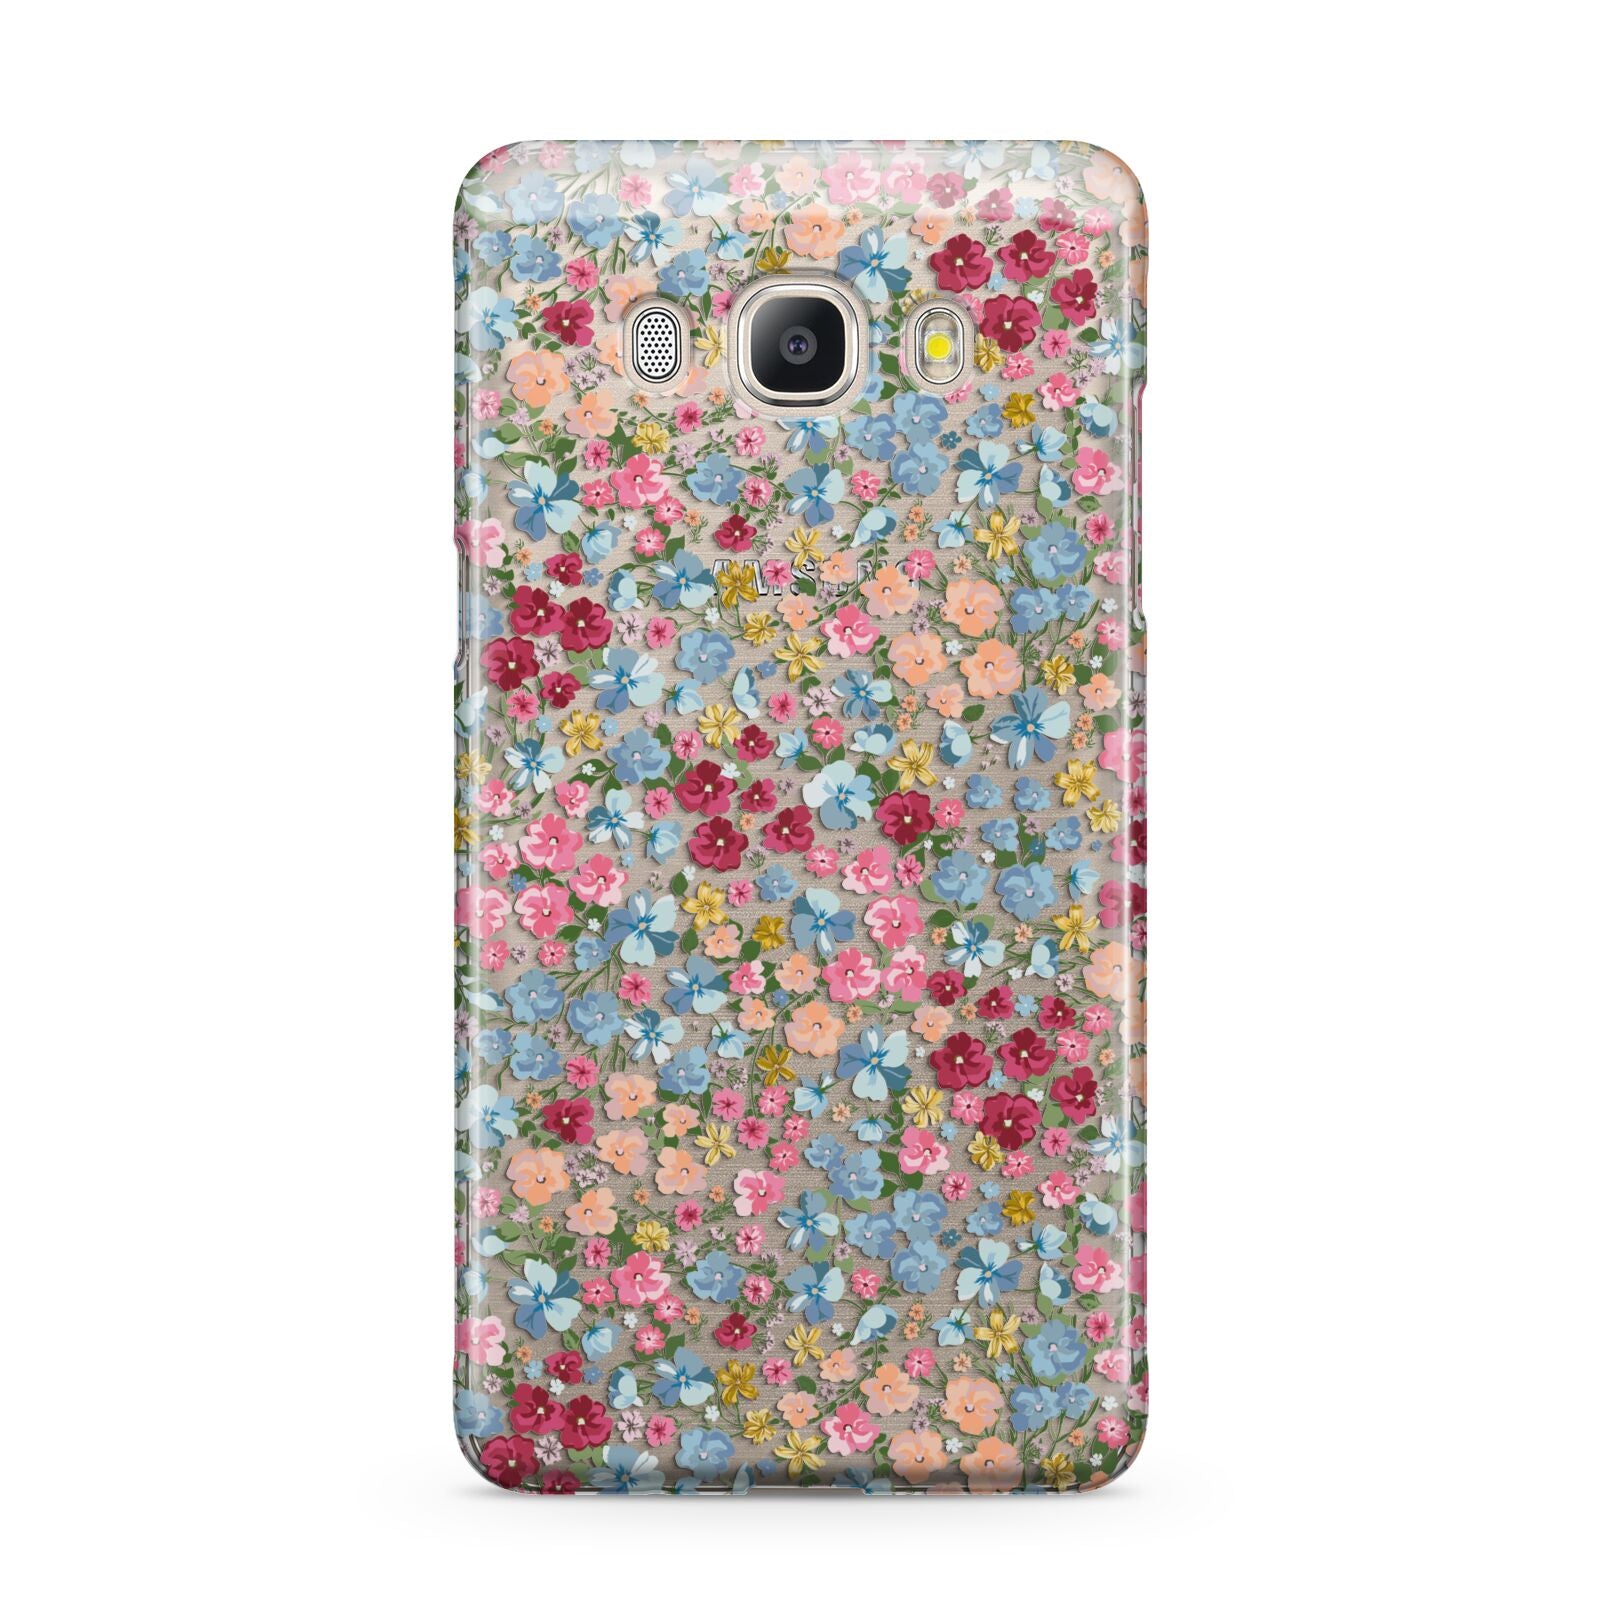 Floral Meadow Samsung Galaxy J5 2016 Case